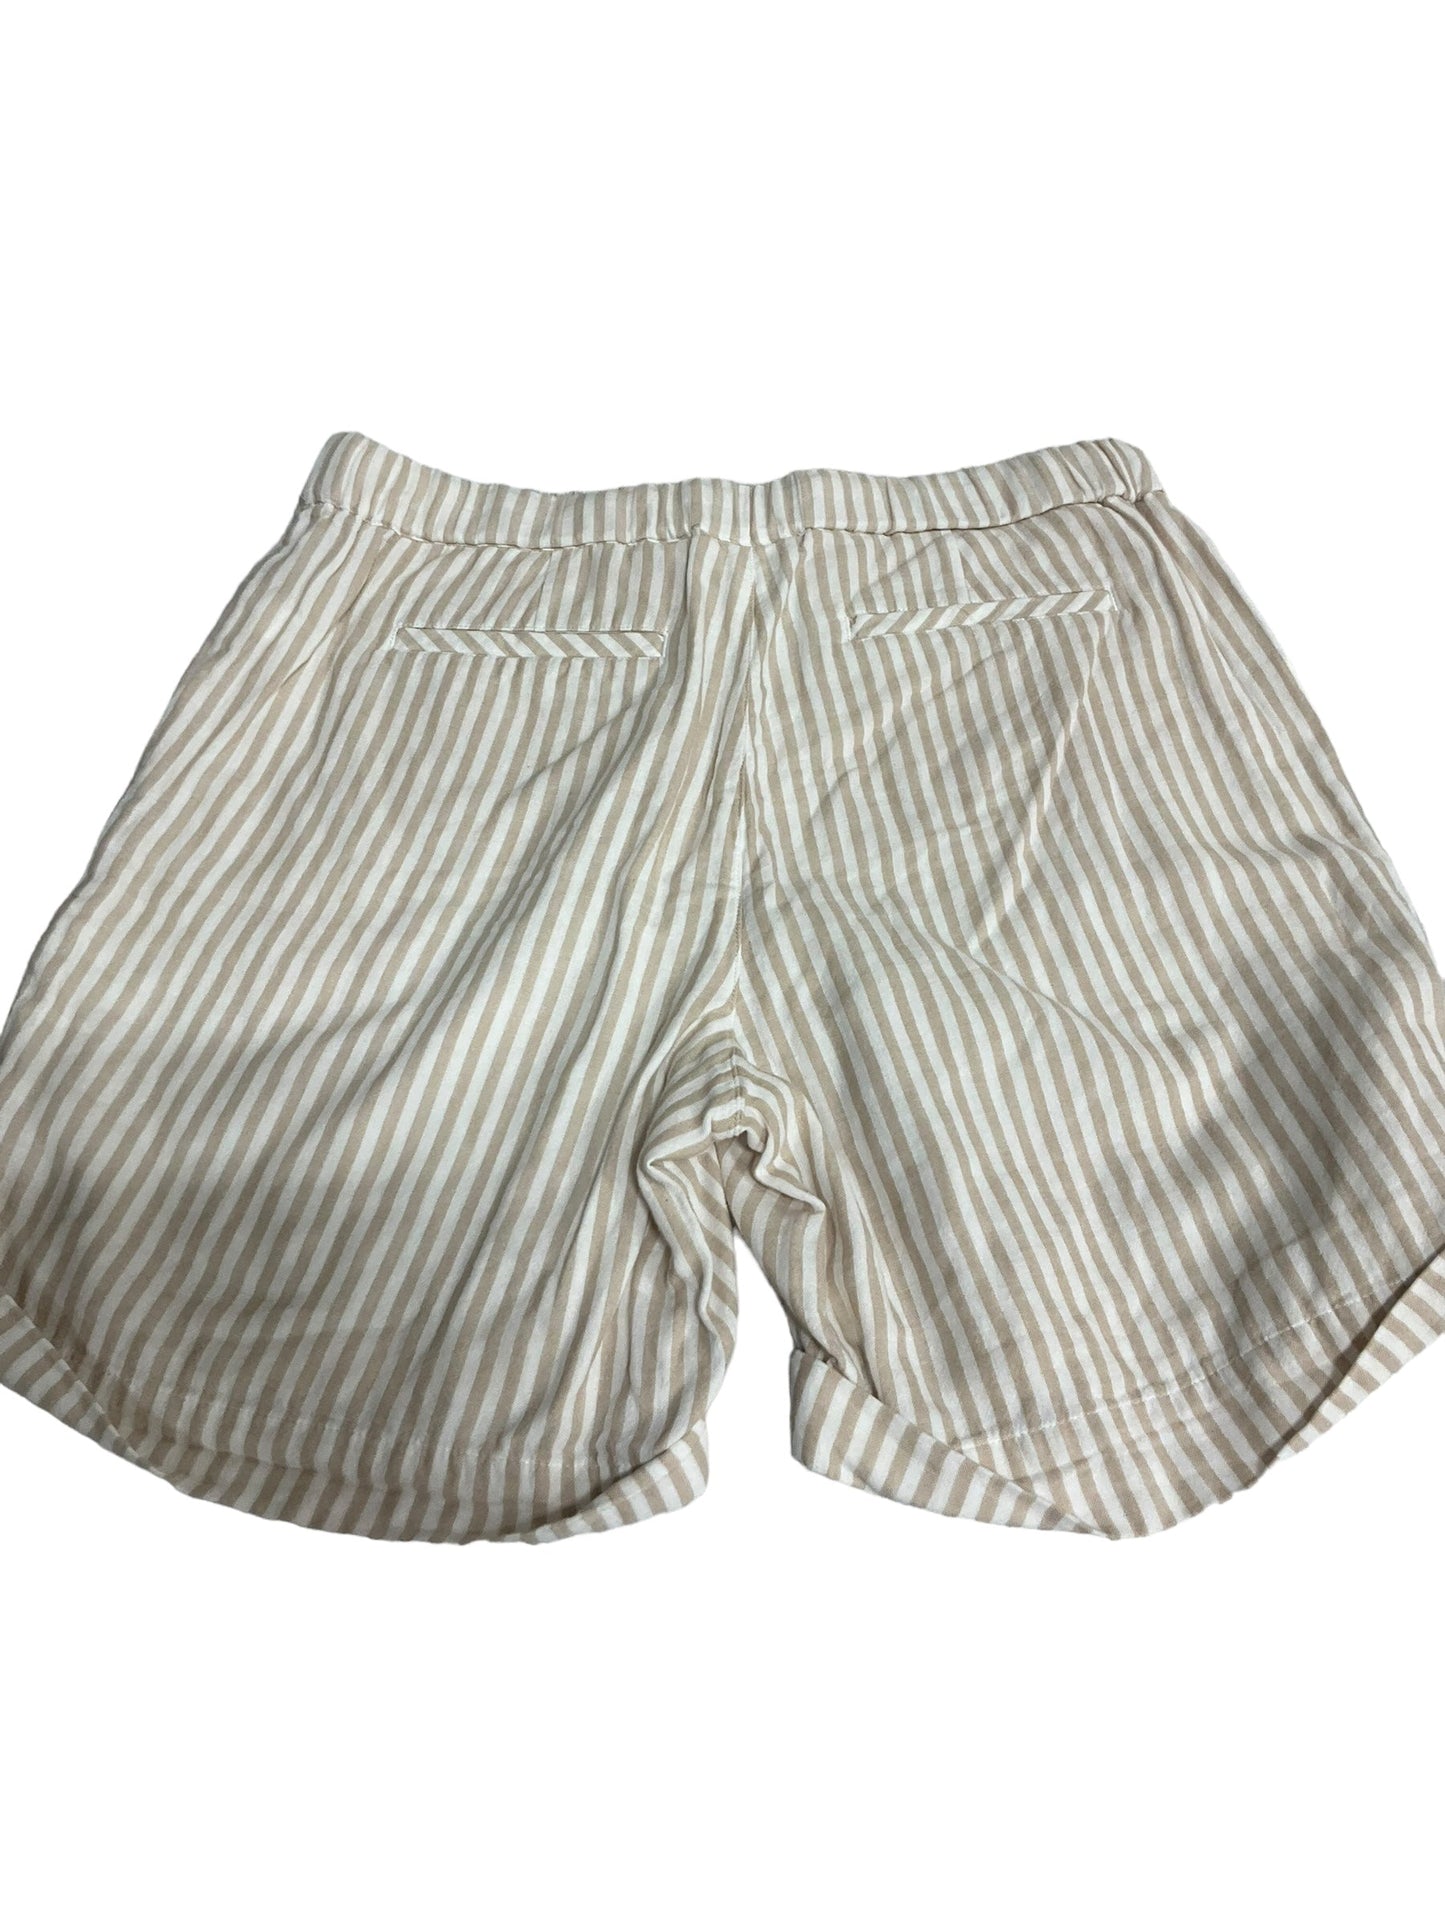 Tan & White Shorts J. Jill, Size S